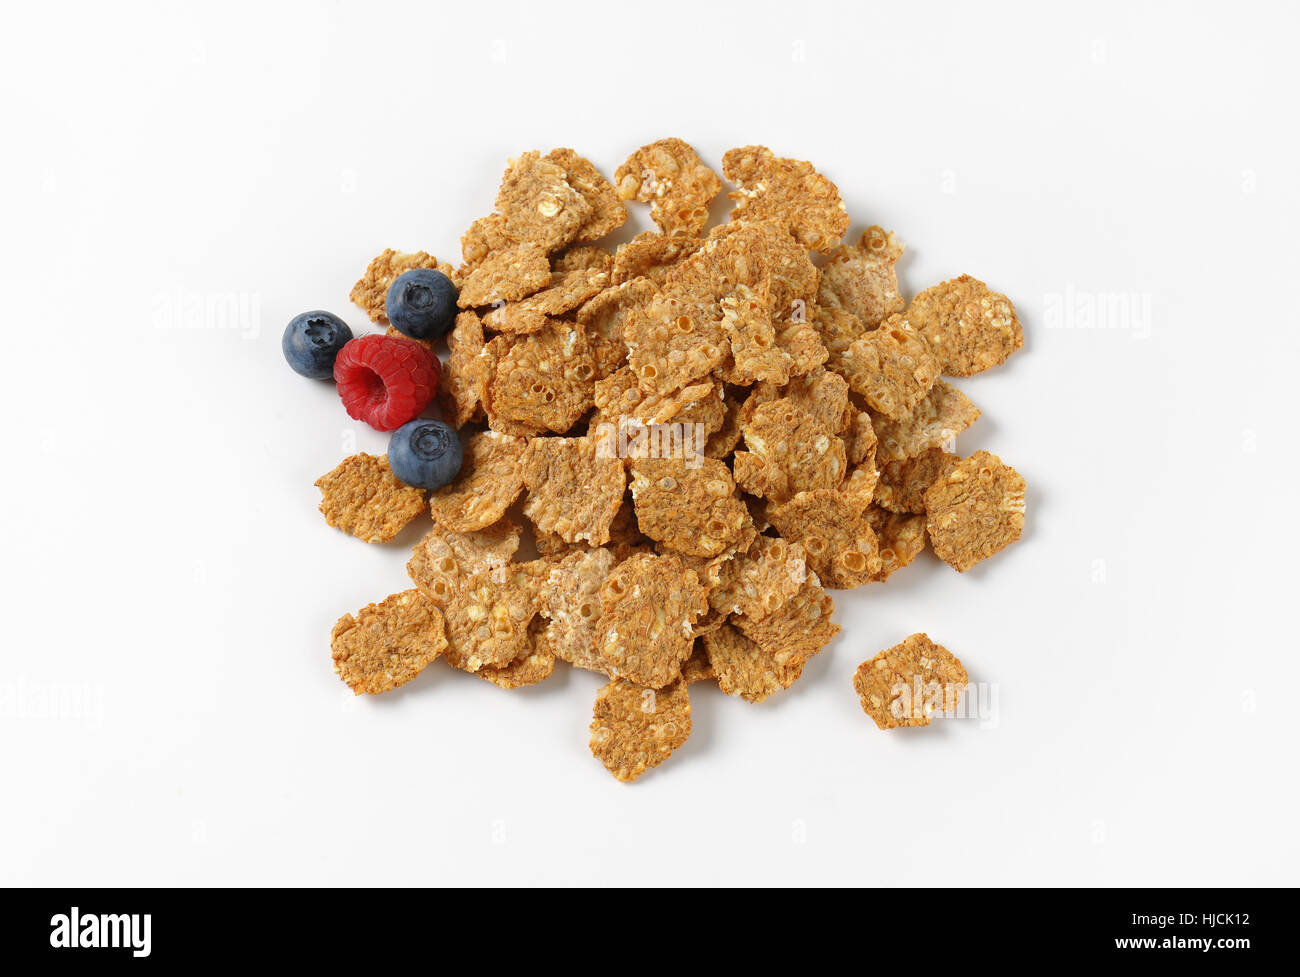 Haufen von Frühstück Getreide und Berry Obst auf weißem Hintergrund Stockfoto